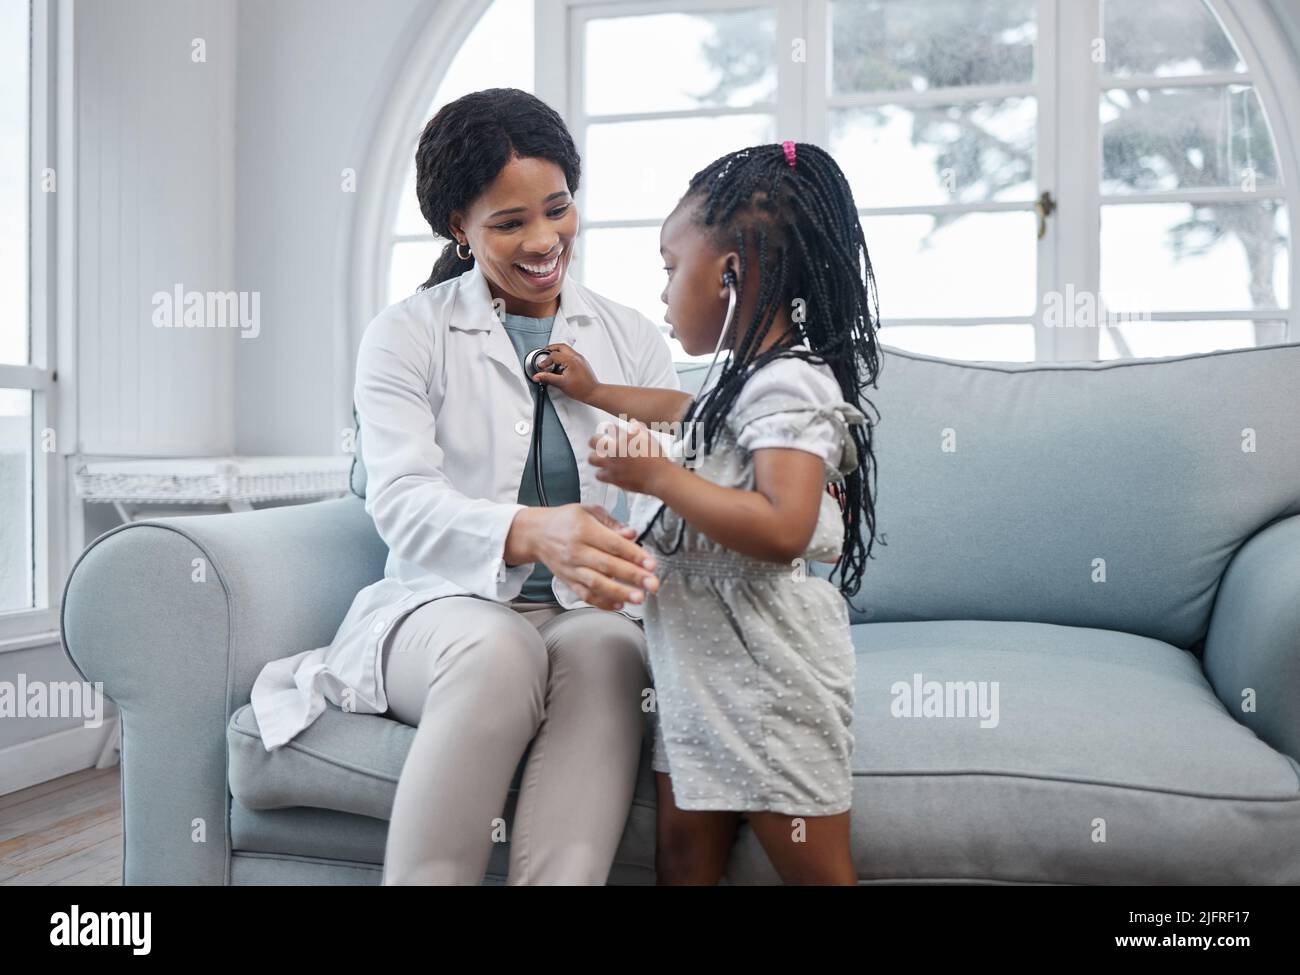 La mia possibilità di essere il medico ora. Scatto di una bambina adorabile che gioca con uno stetoscopio durante una consultazione con un medico in un ufficio medico. Foto Stock